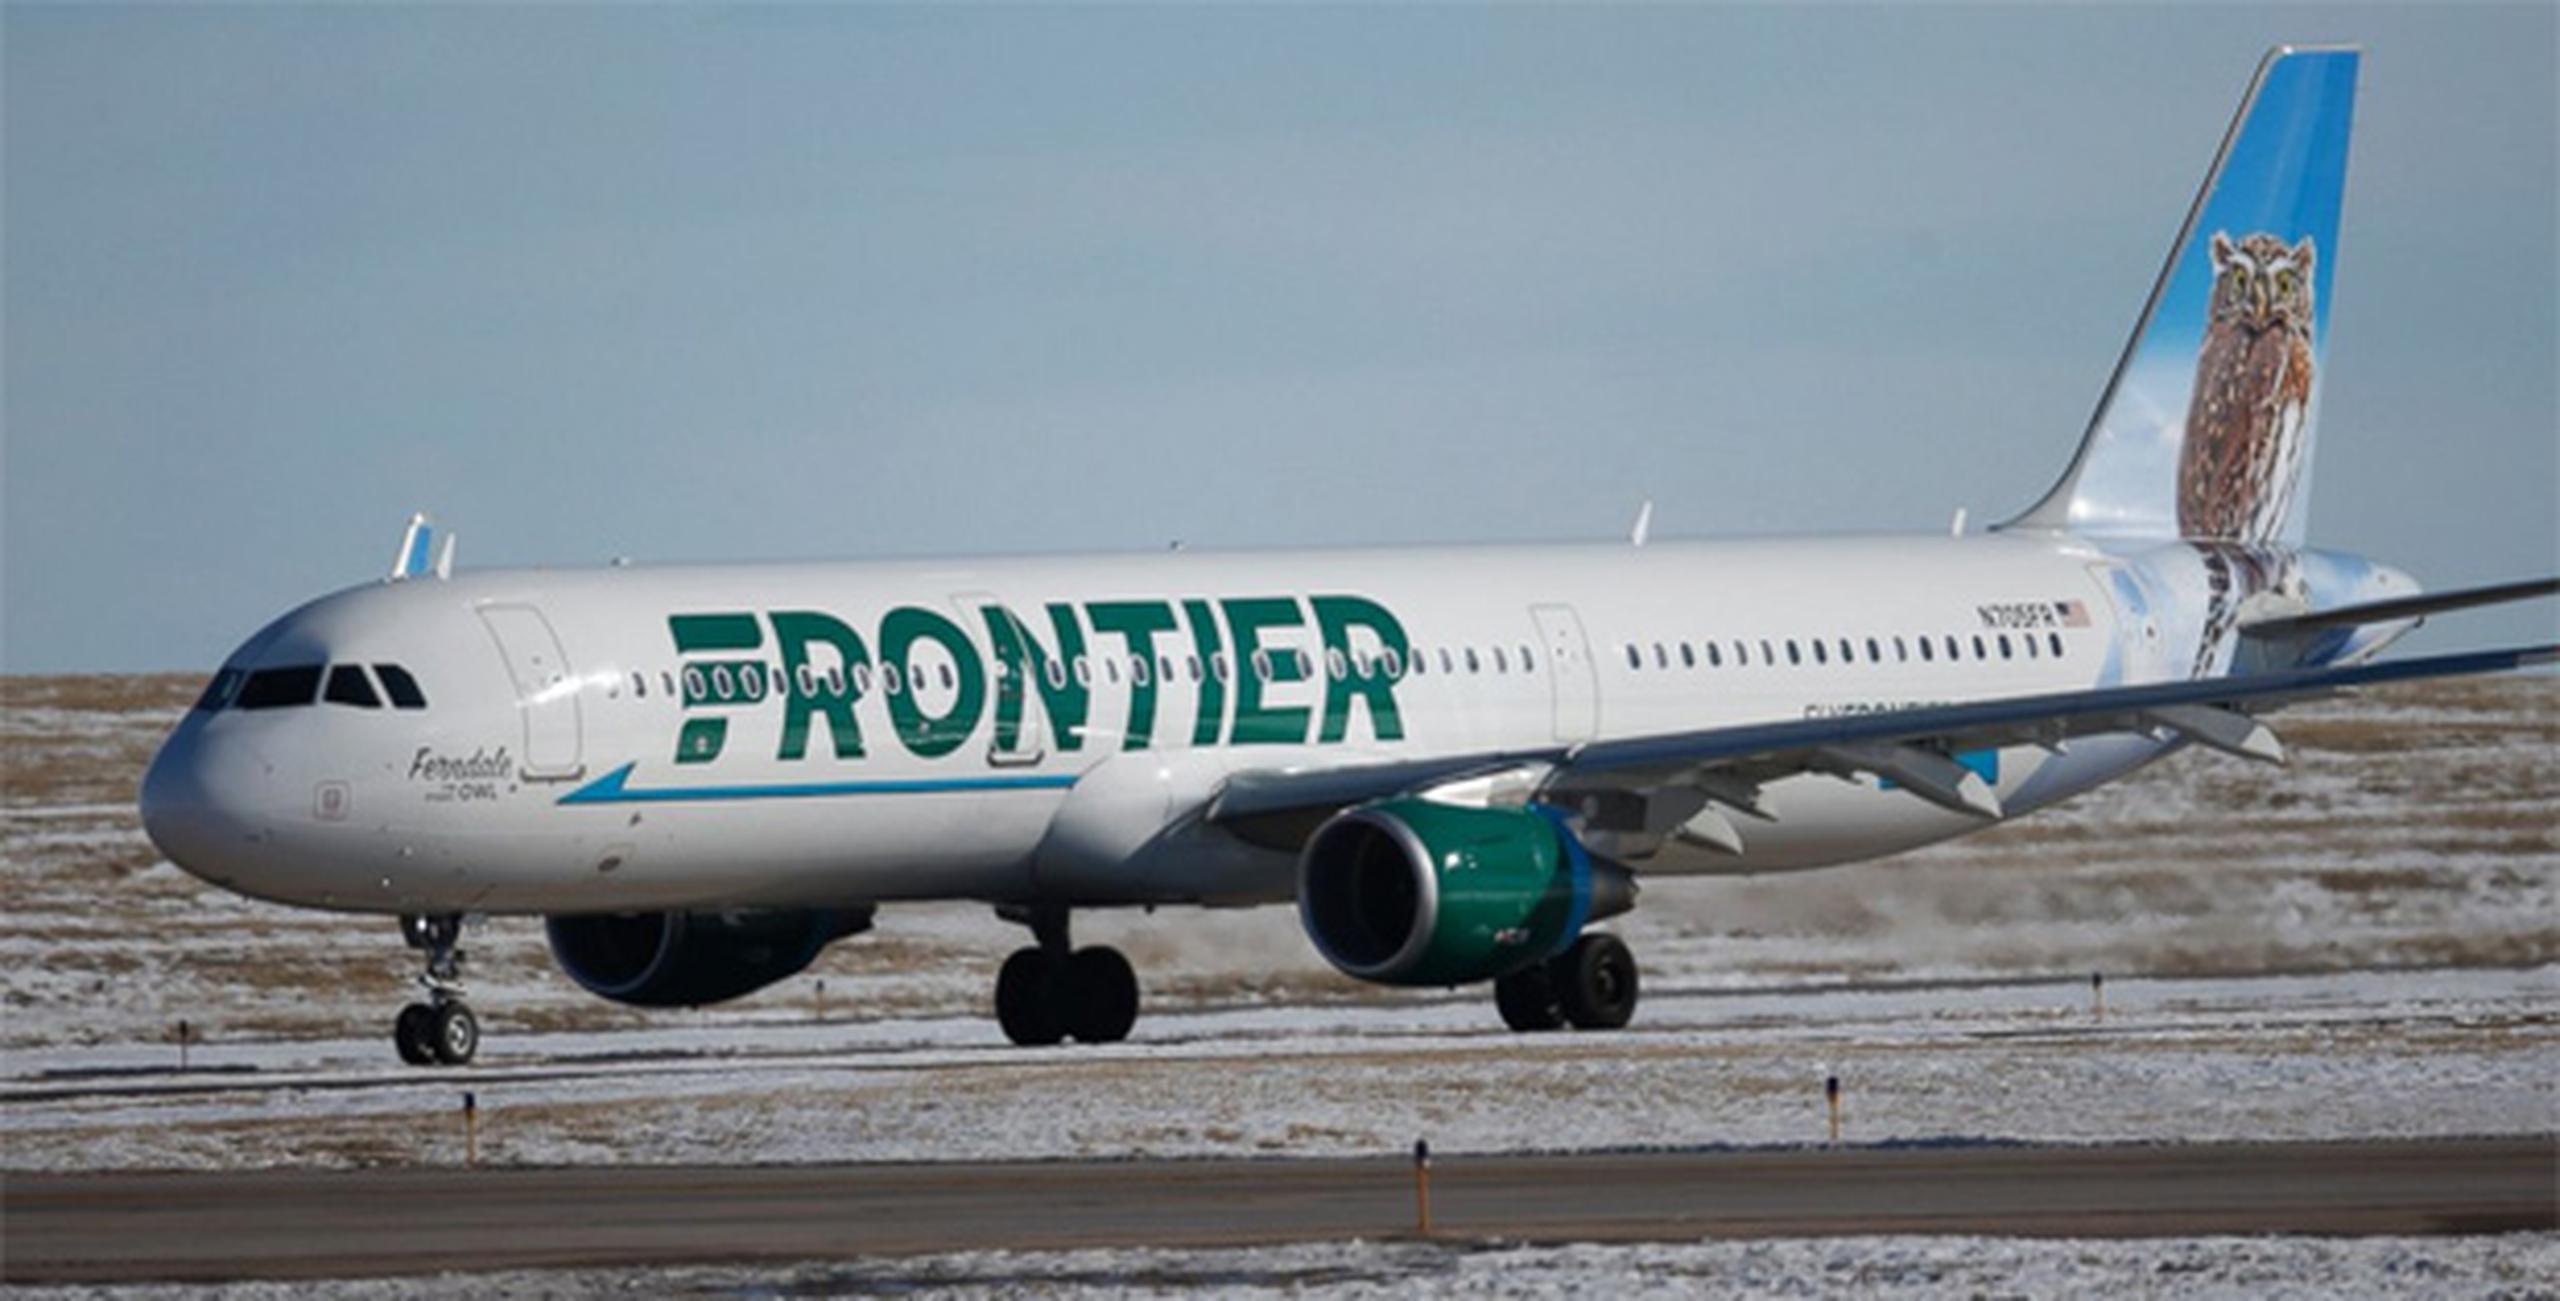 Frontier, reconocida como una aerolínea “ultra low cost” o súper económica, opera vuelos a sobre 65 destinos domésticos e internacionales. (Archivo)